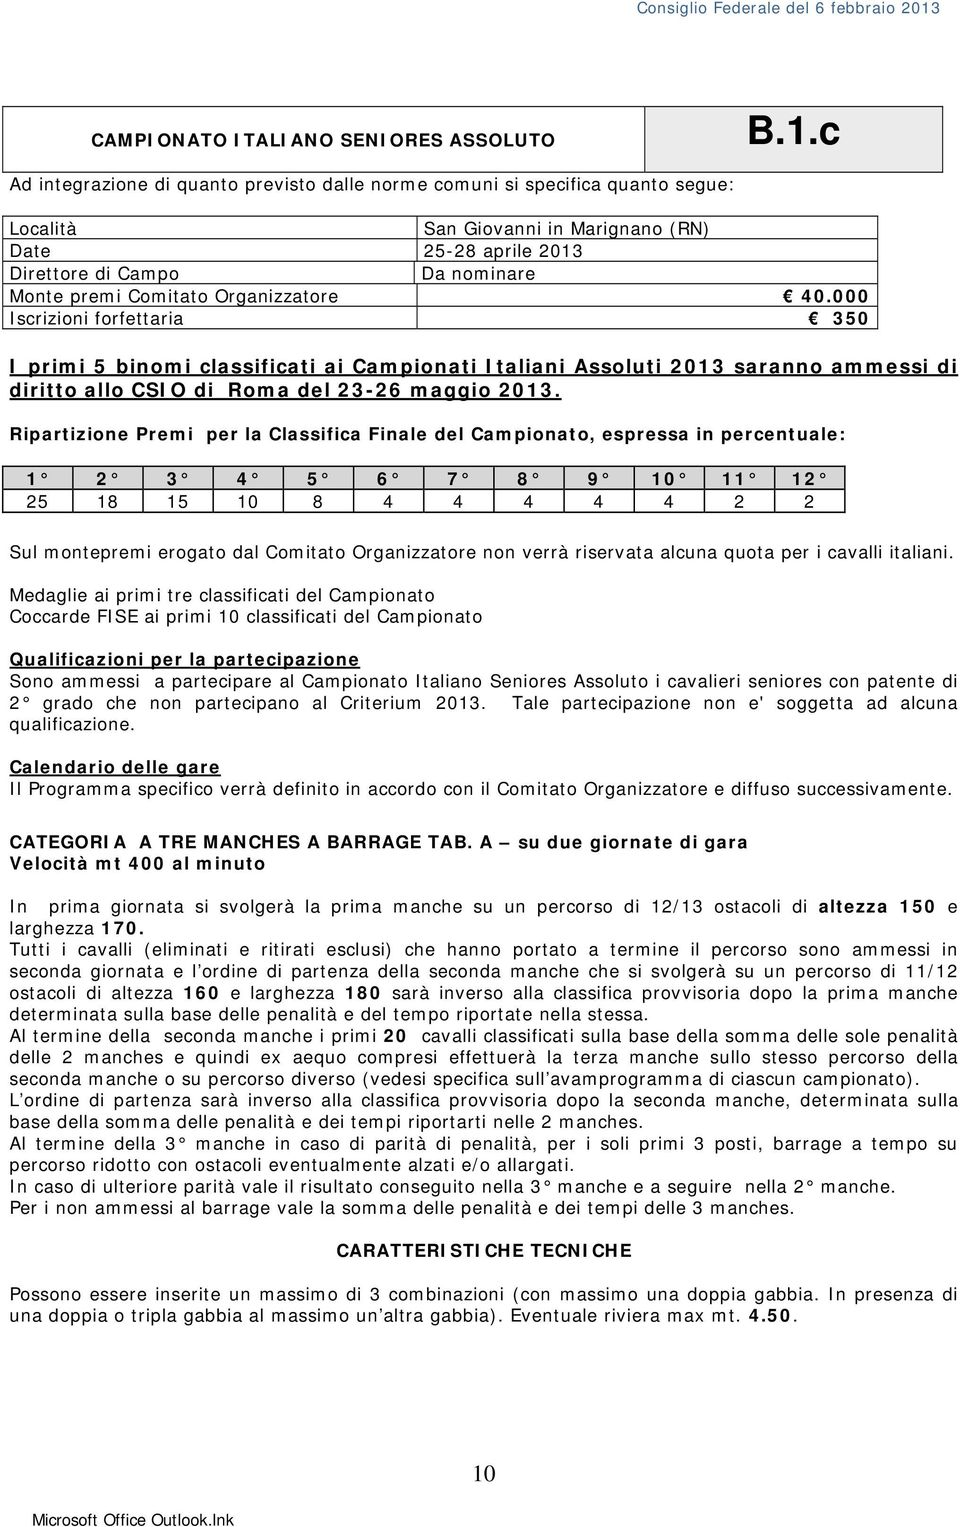 Organizzatore 40.000 Iscrizioni forfettaria 350 I primi 5 binomi classificati ai Campionati Italiani Assoluti 2013 saranno ammessi di diritto allo CSIO di Roma del 23-26 maggio 2013.